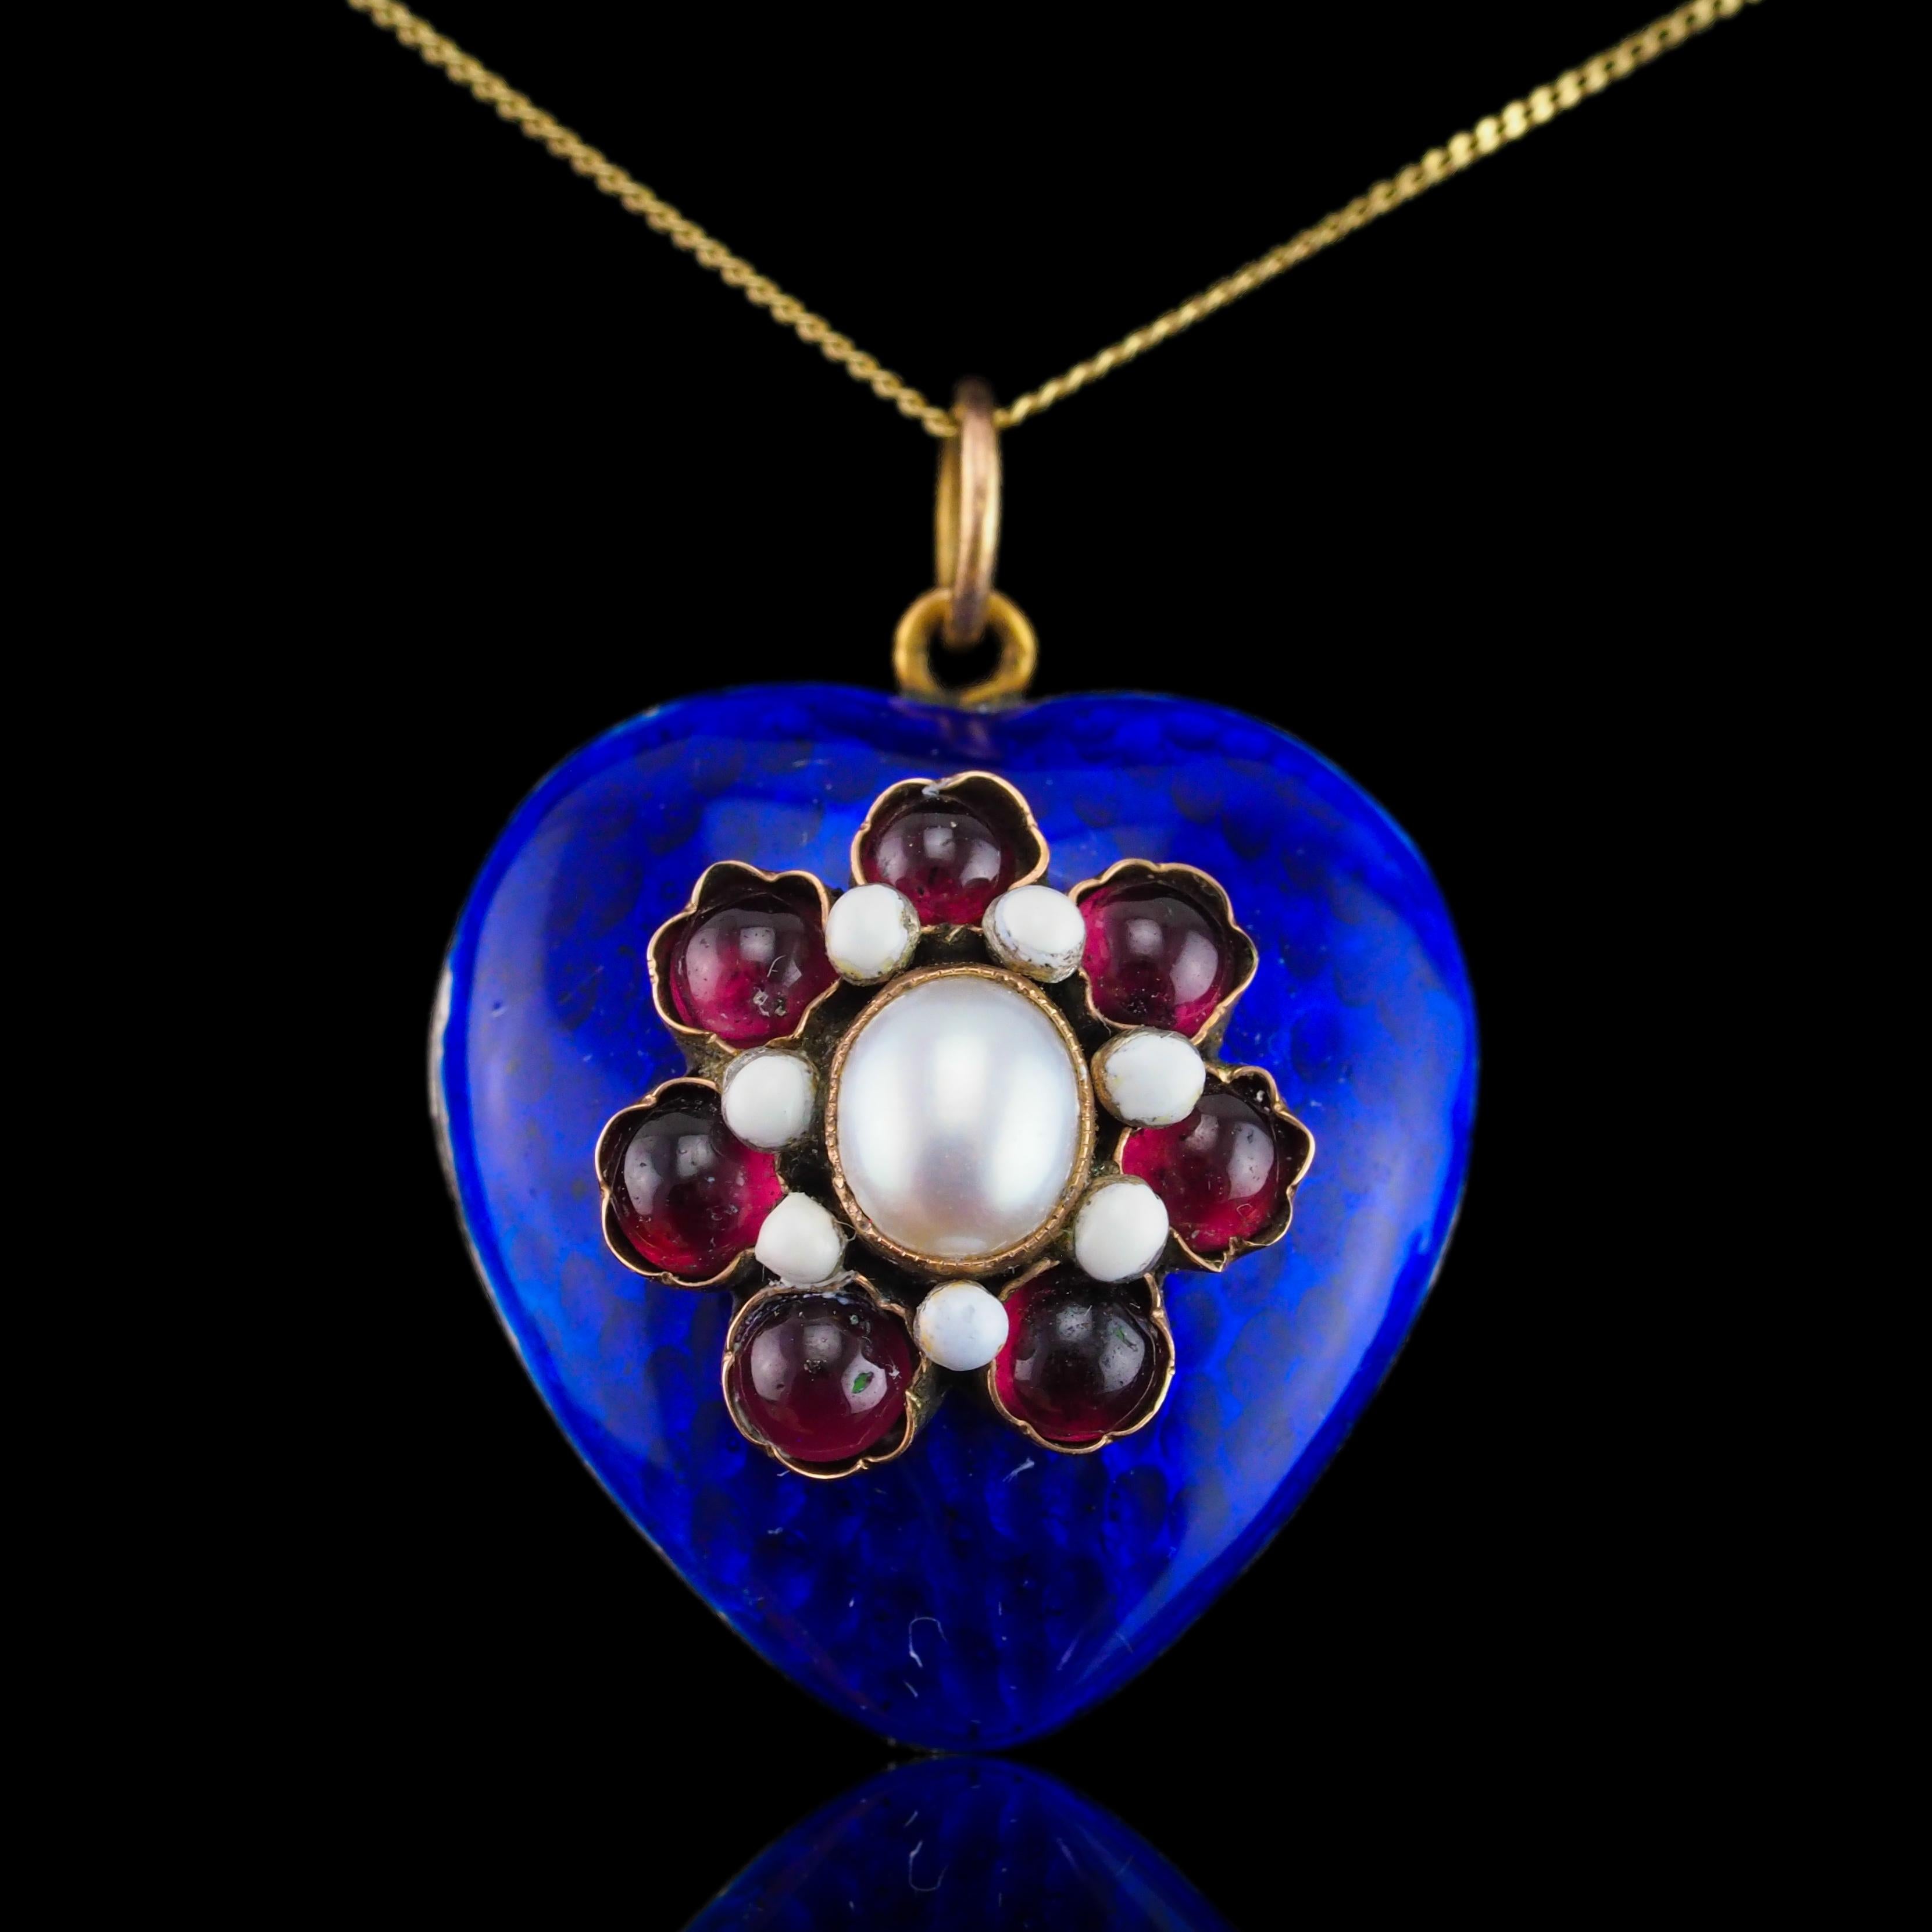 Antique Victorian Blue Enamel Garnet Heart Necklace 'Puffy' Pendant - c.1900 For Sale 4